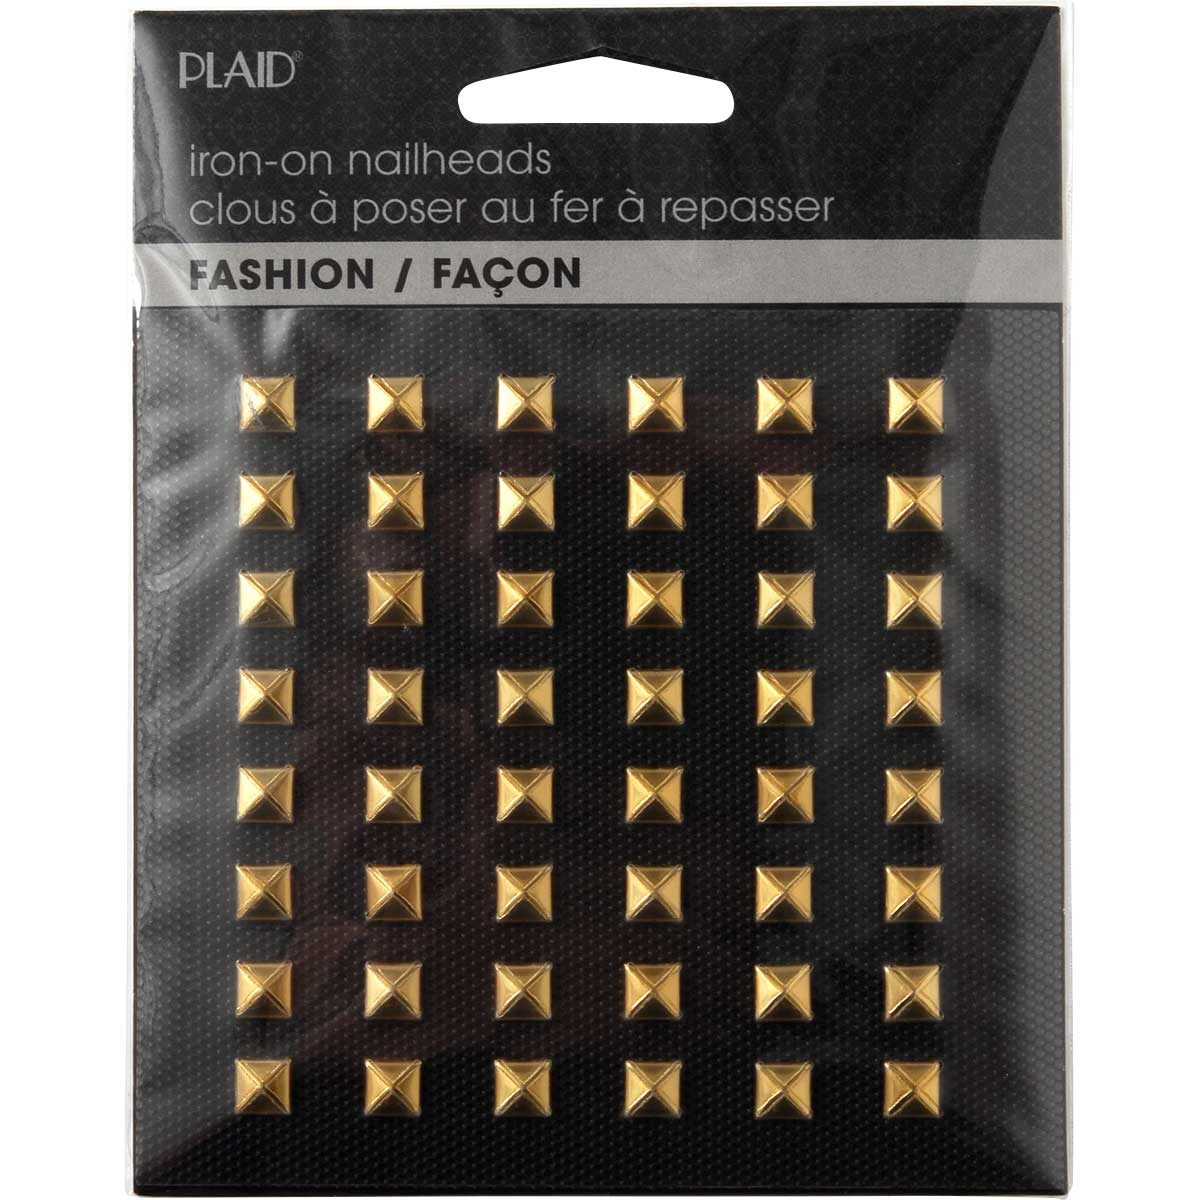 Plaid ® Hot Fix Nailhead Iron-Ons - Pyramid Shiny Gold - 71032